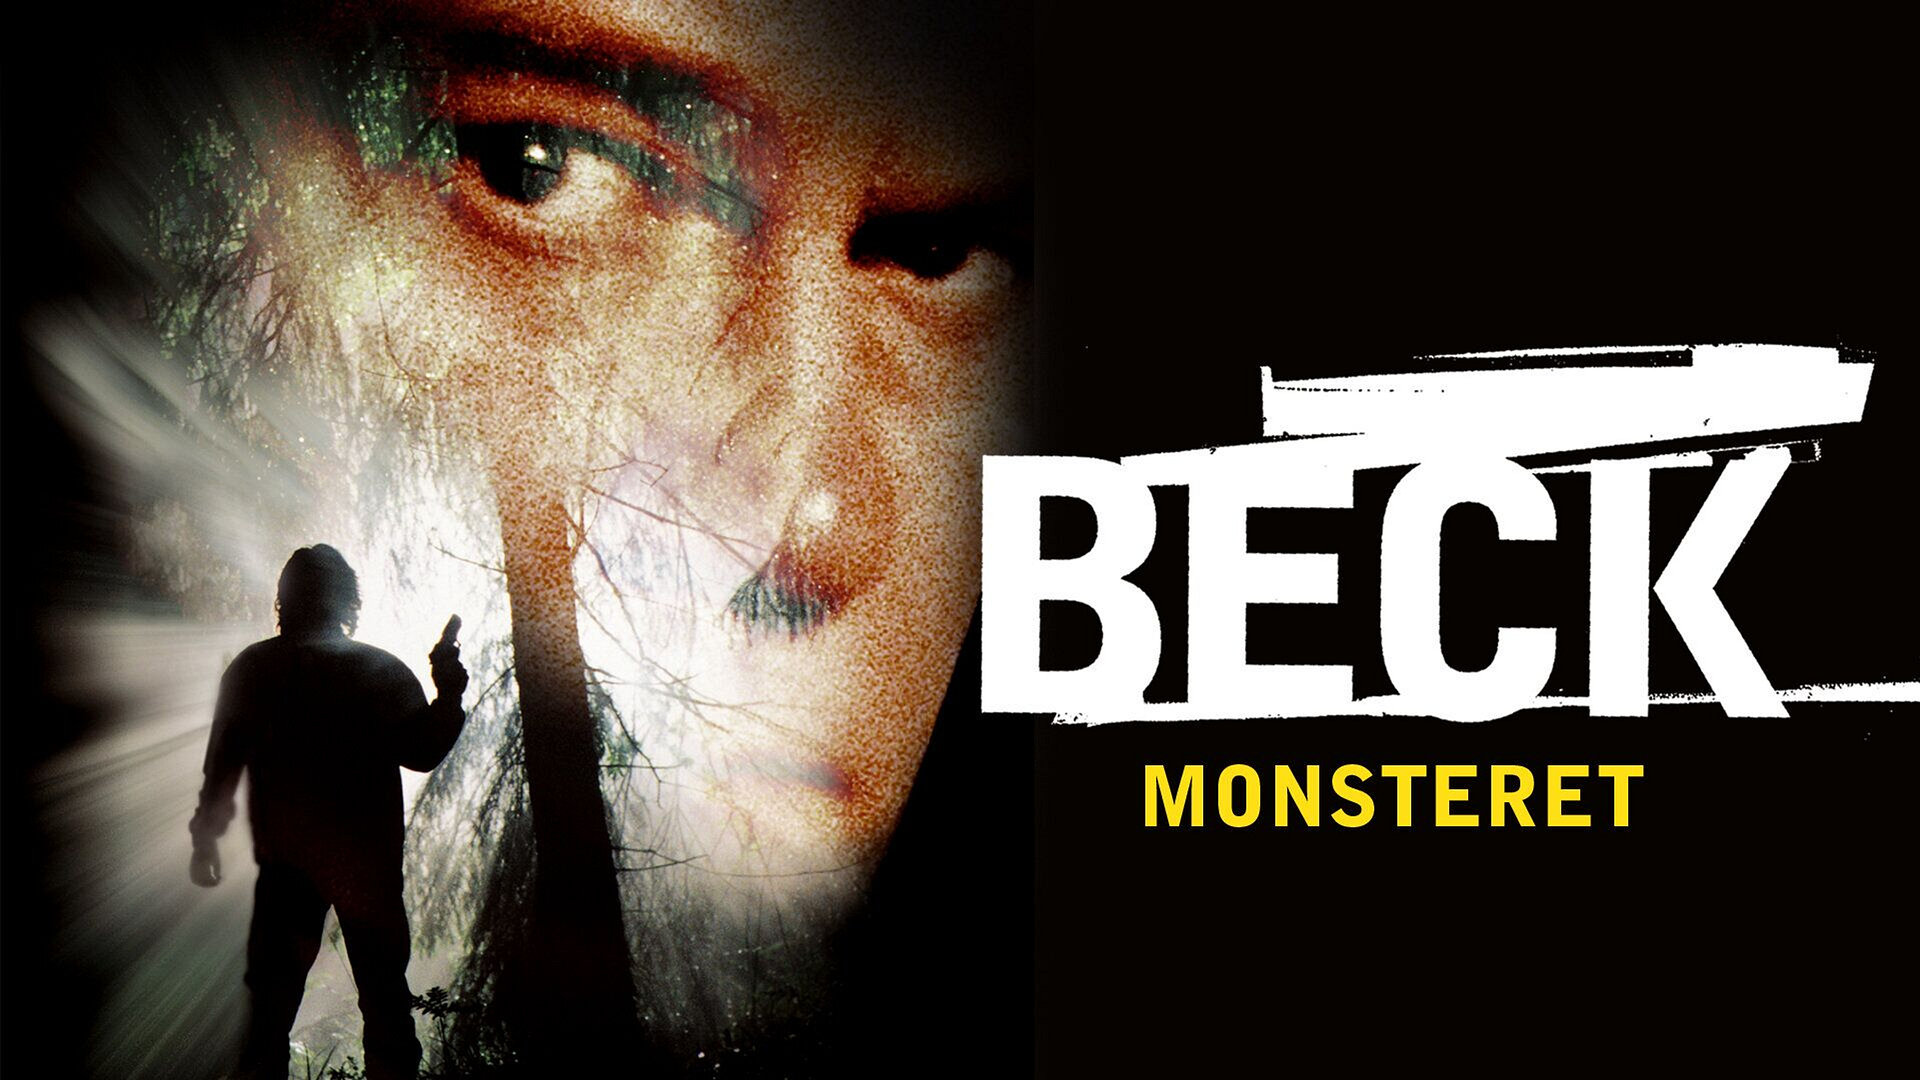 Beck – Monsteret (6)